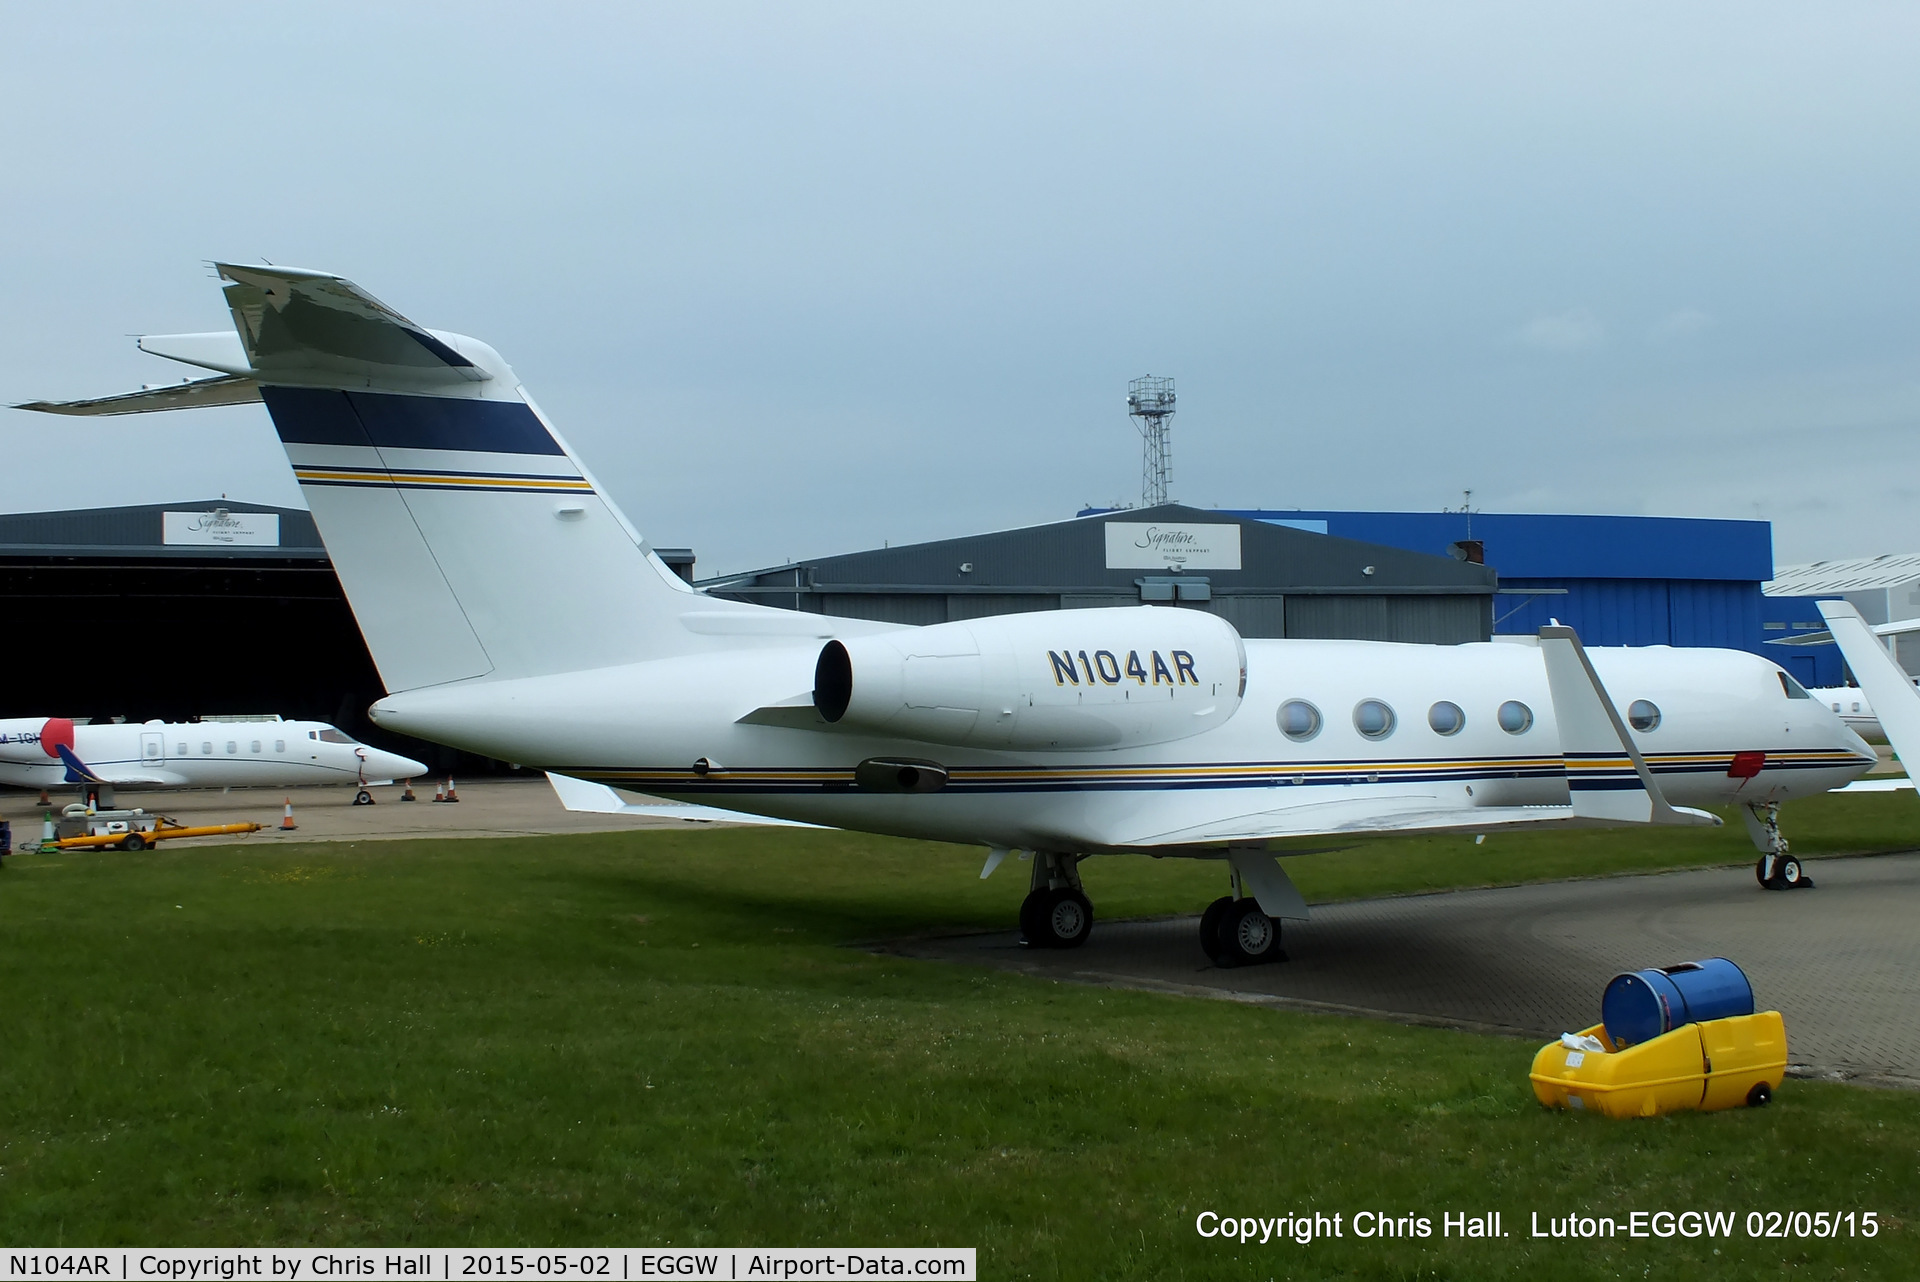 N104AR, 2011 Gulfstream Aerospace GIV-X (G450) C/N 4223, parked at Luton